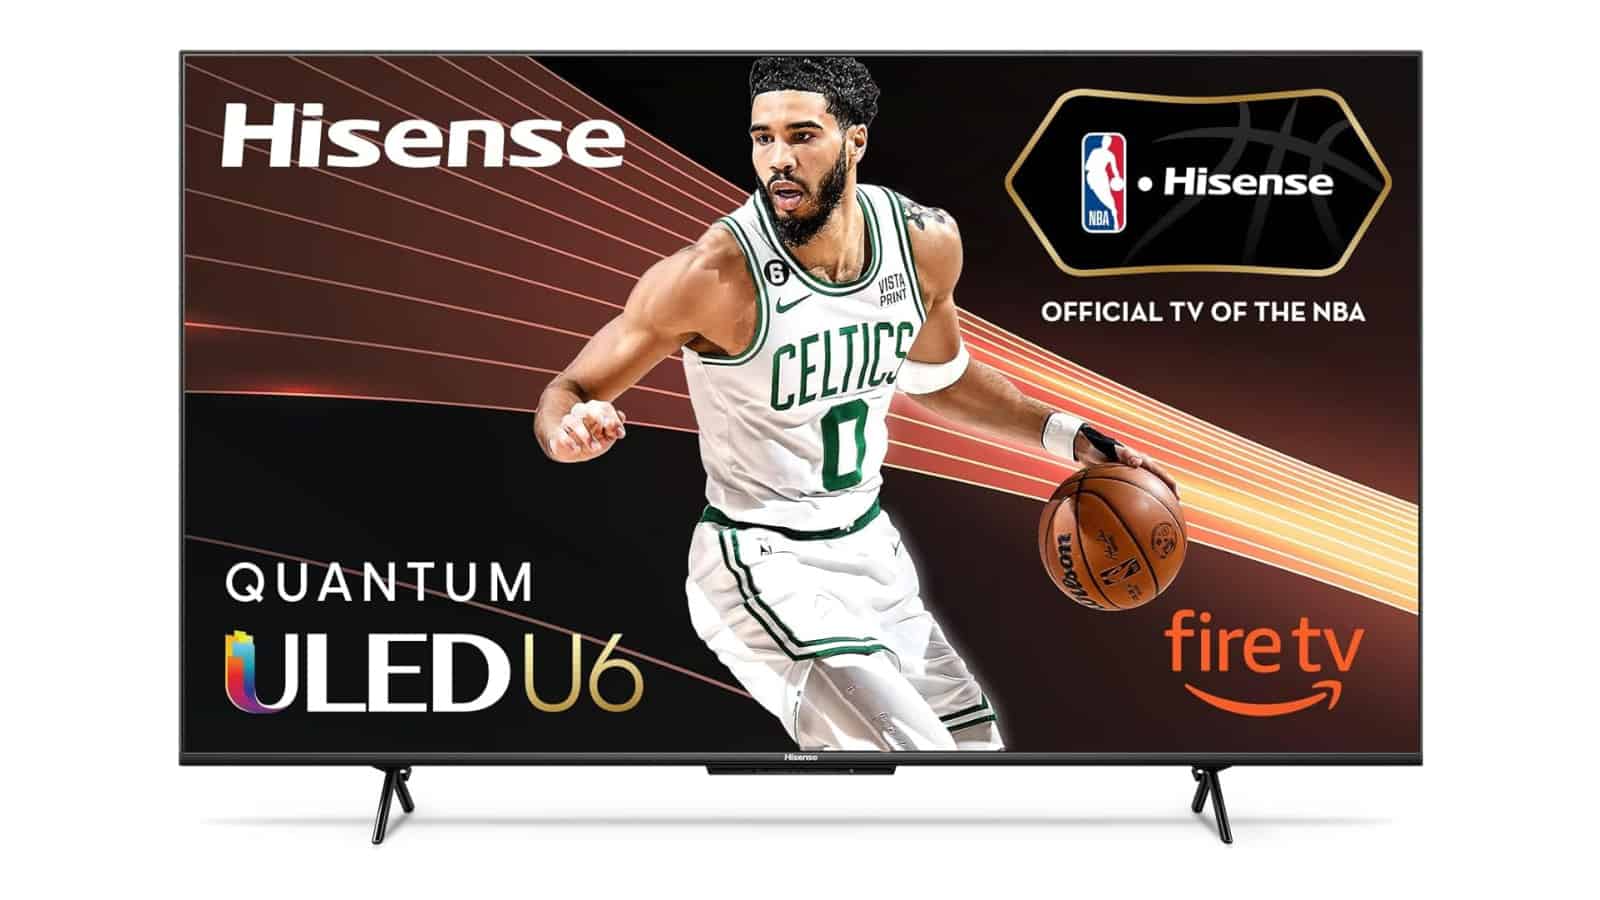 ¡Oferta increíble!  ¡El televisor Hisense U6HF de 75 pulgadas baja a $ 630!